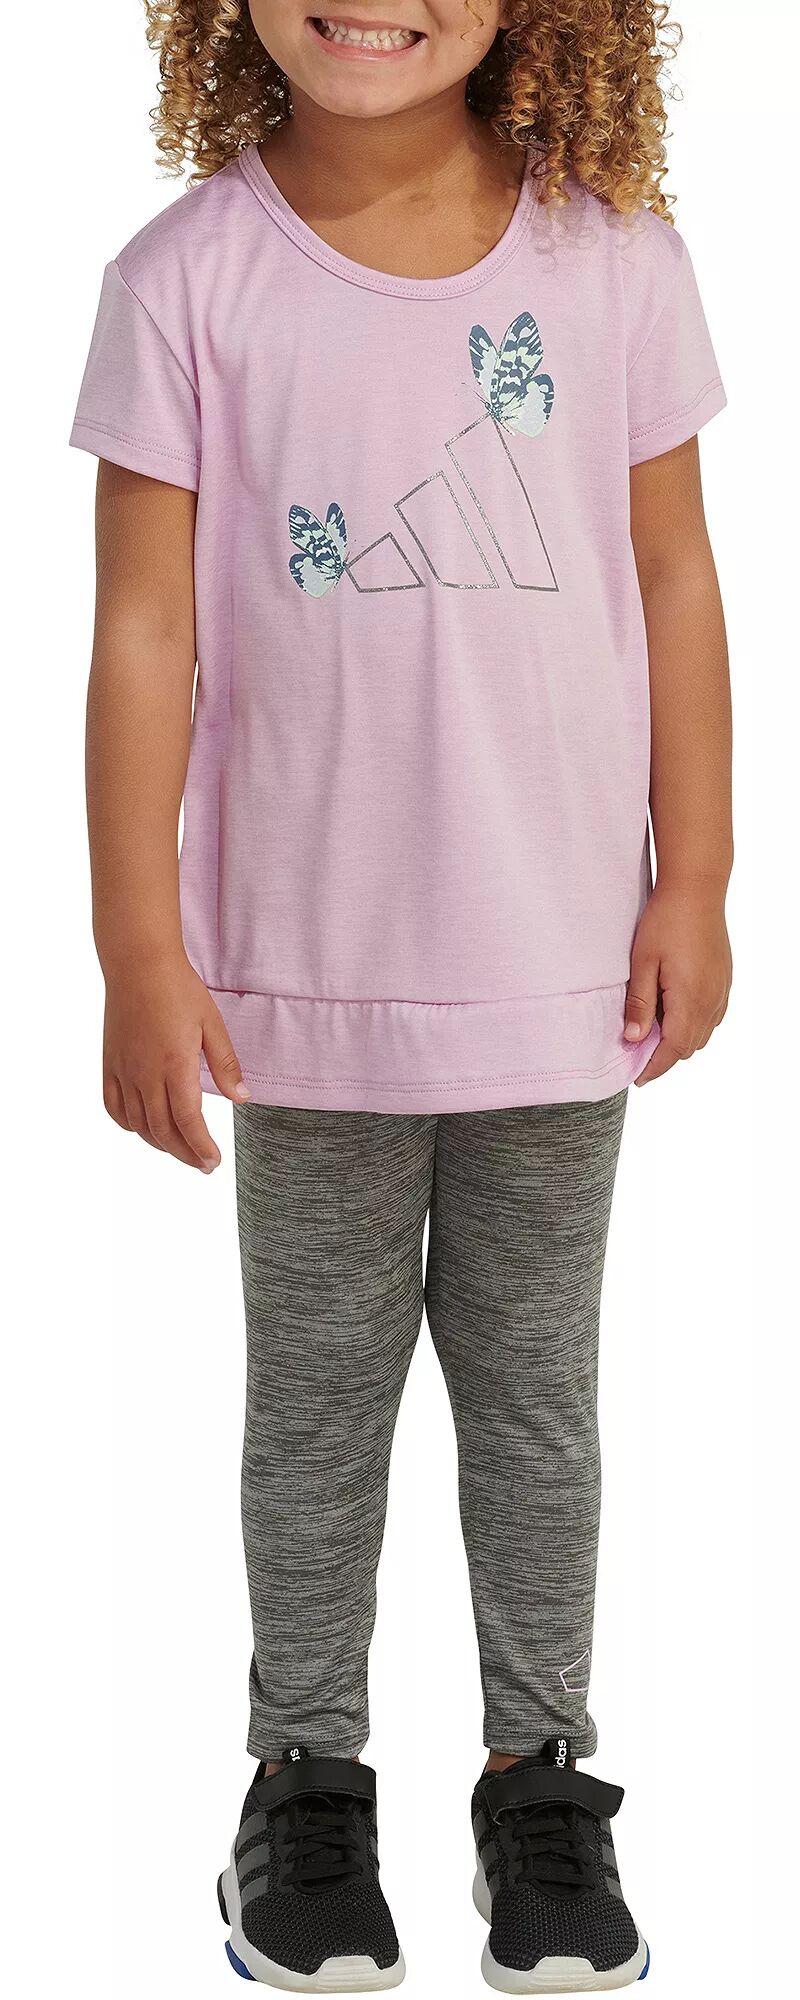 Комплект из меланжевой футболки и леггинсов Adidas Little Girls из двух предметов